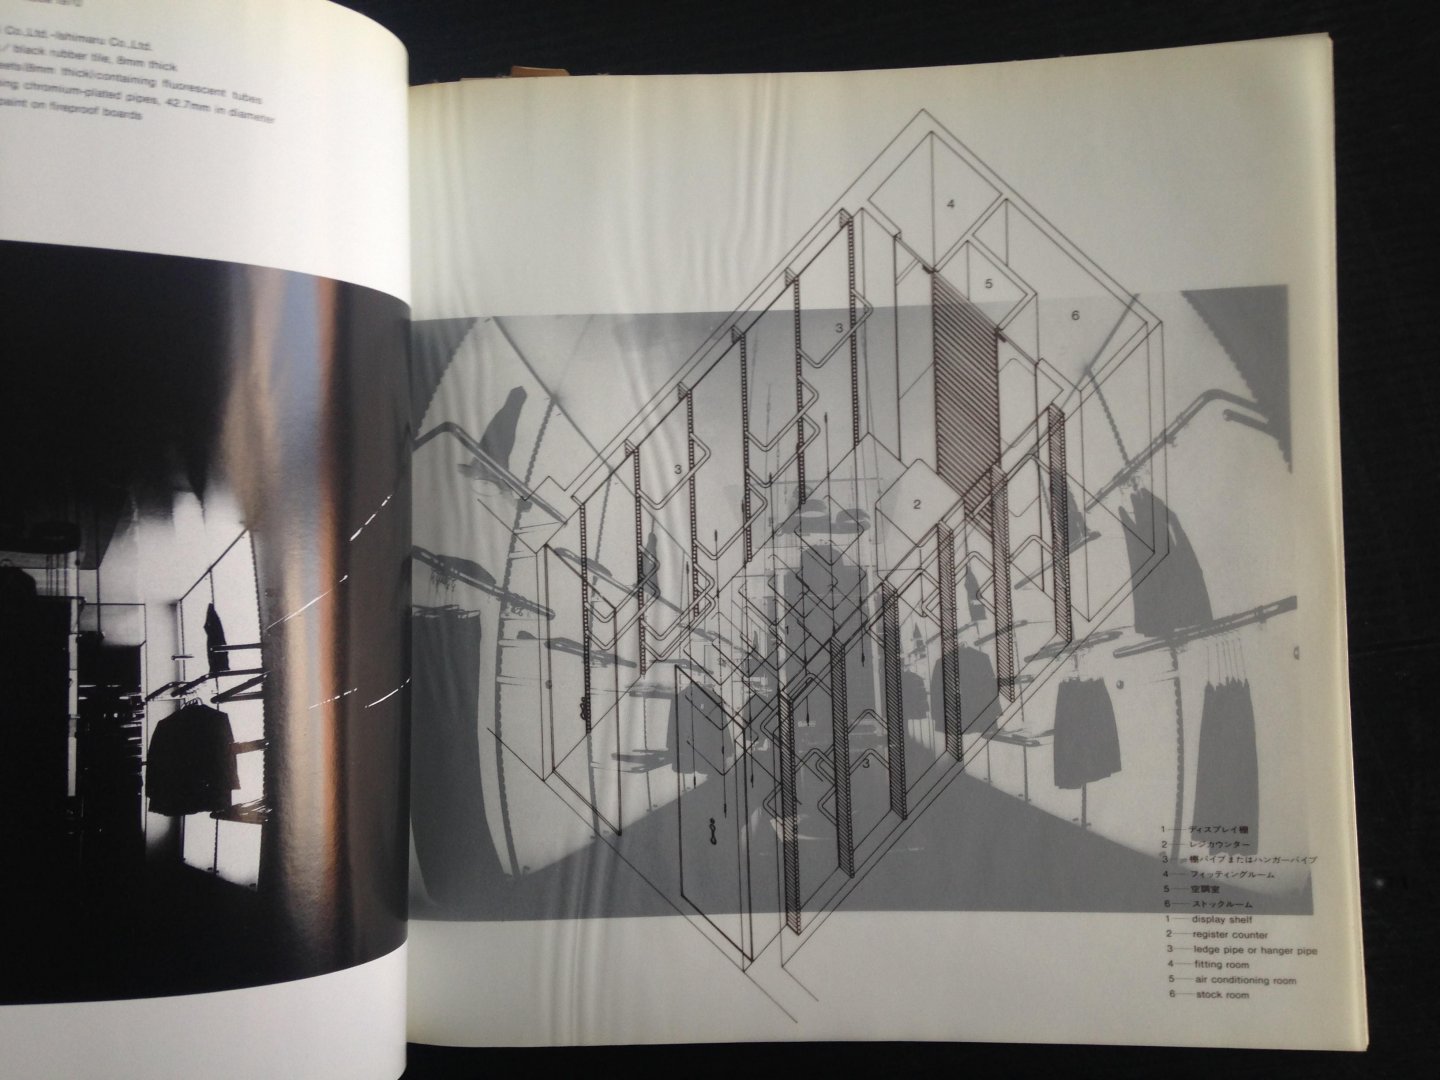  - The Works of Shiro Kuramata 1967-1981[architecture]